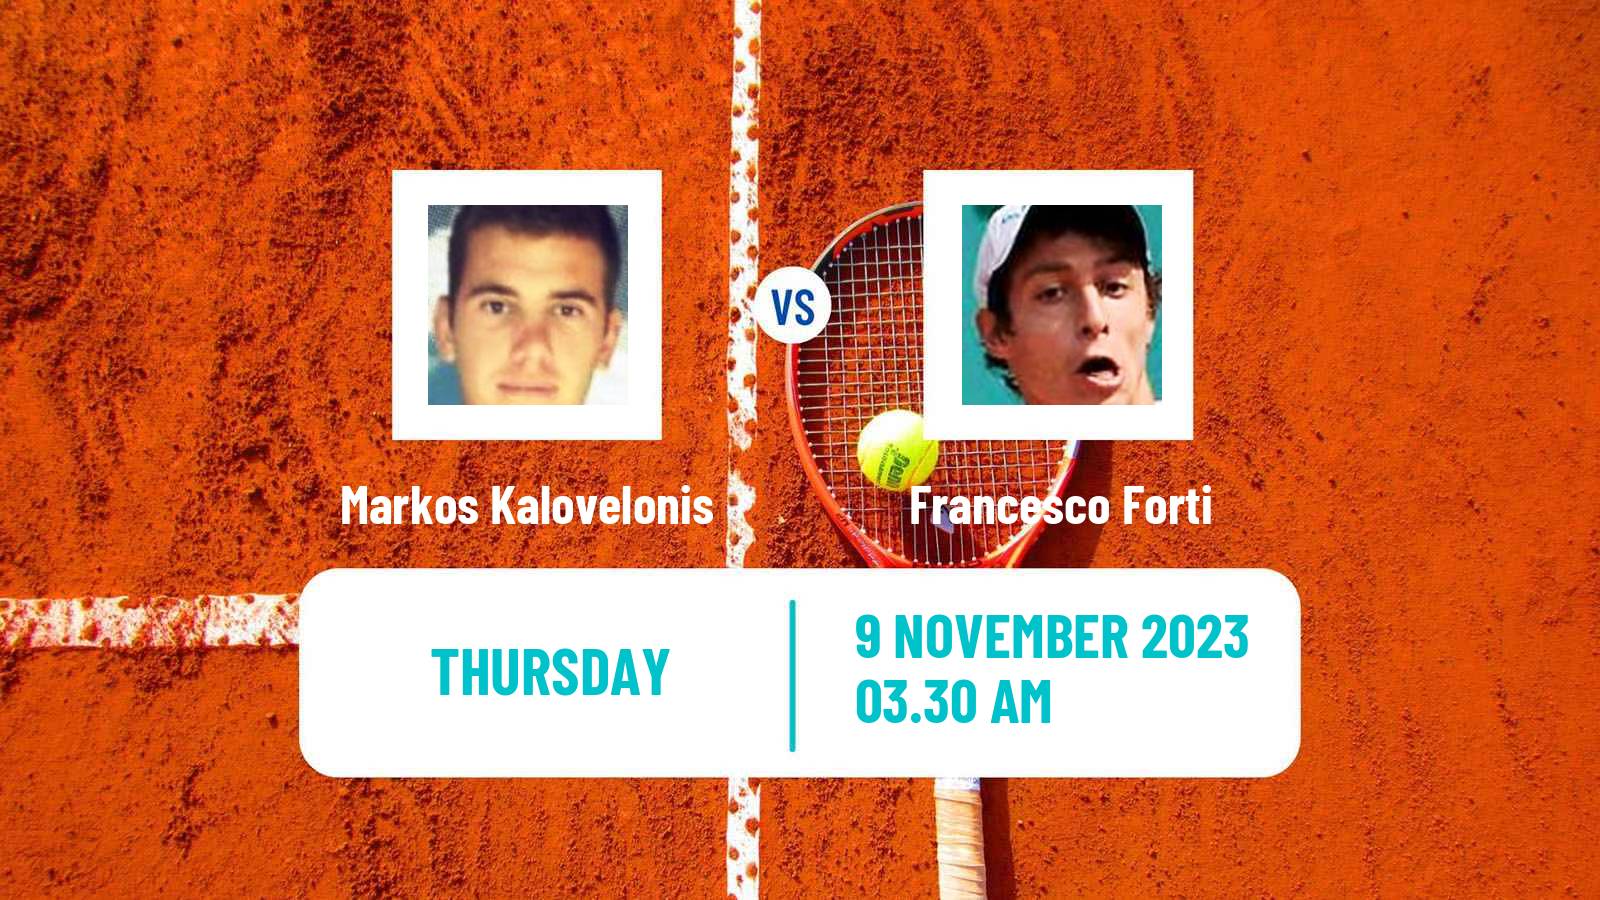 Tennis ITF M25 Heraklion 2 Men Markos Kalovelonis - Francesco Forti